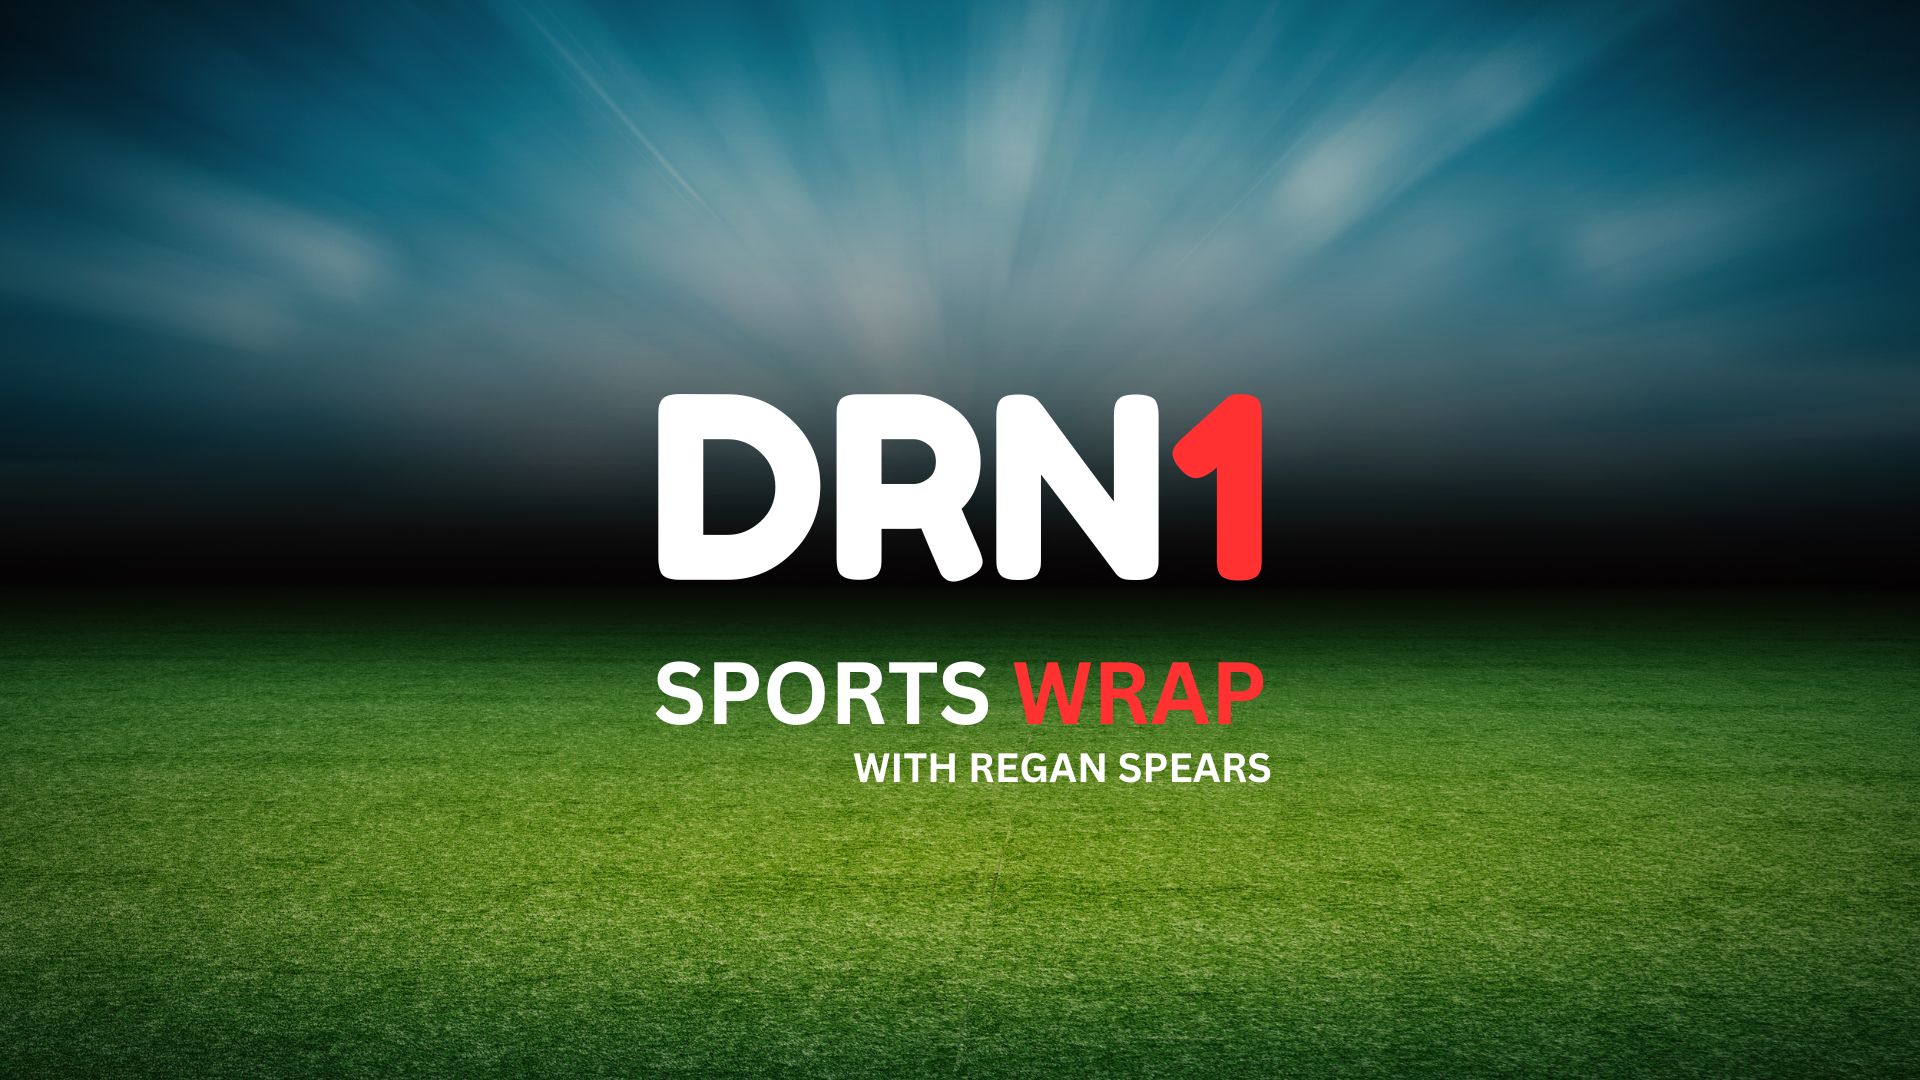 DRN1 Sports Wrap